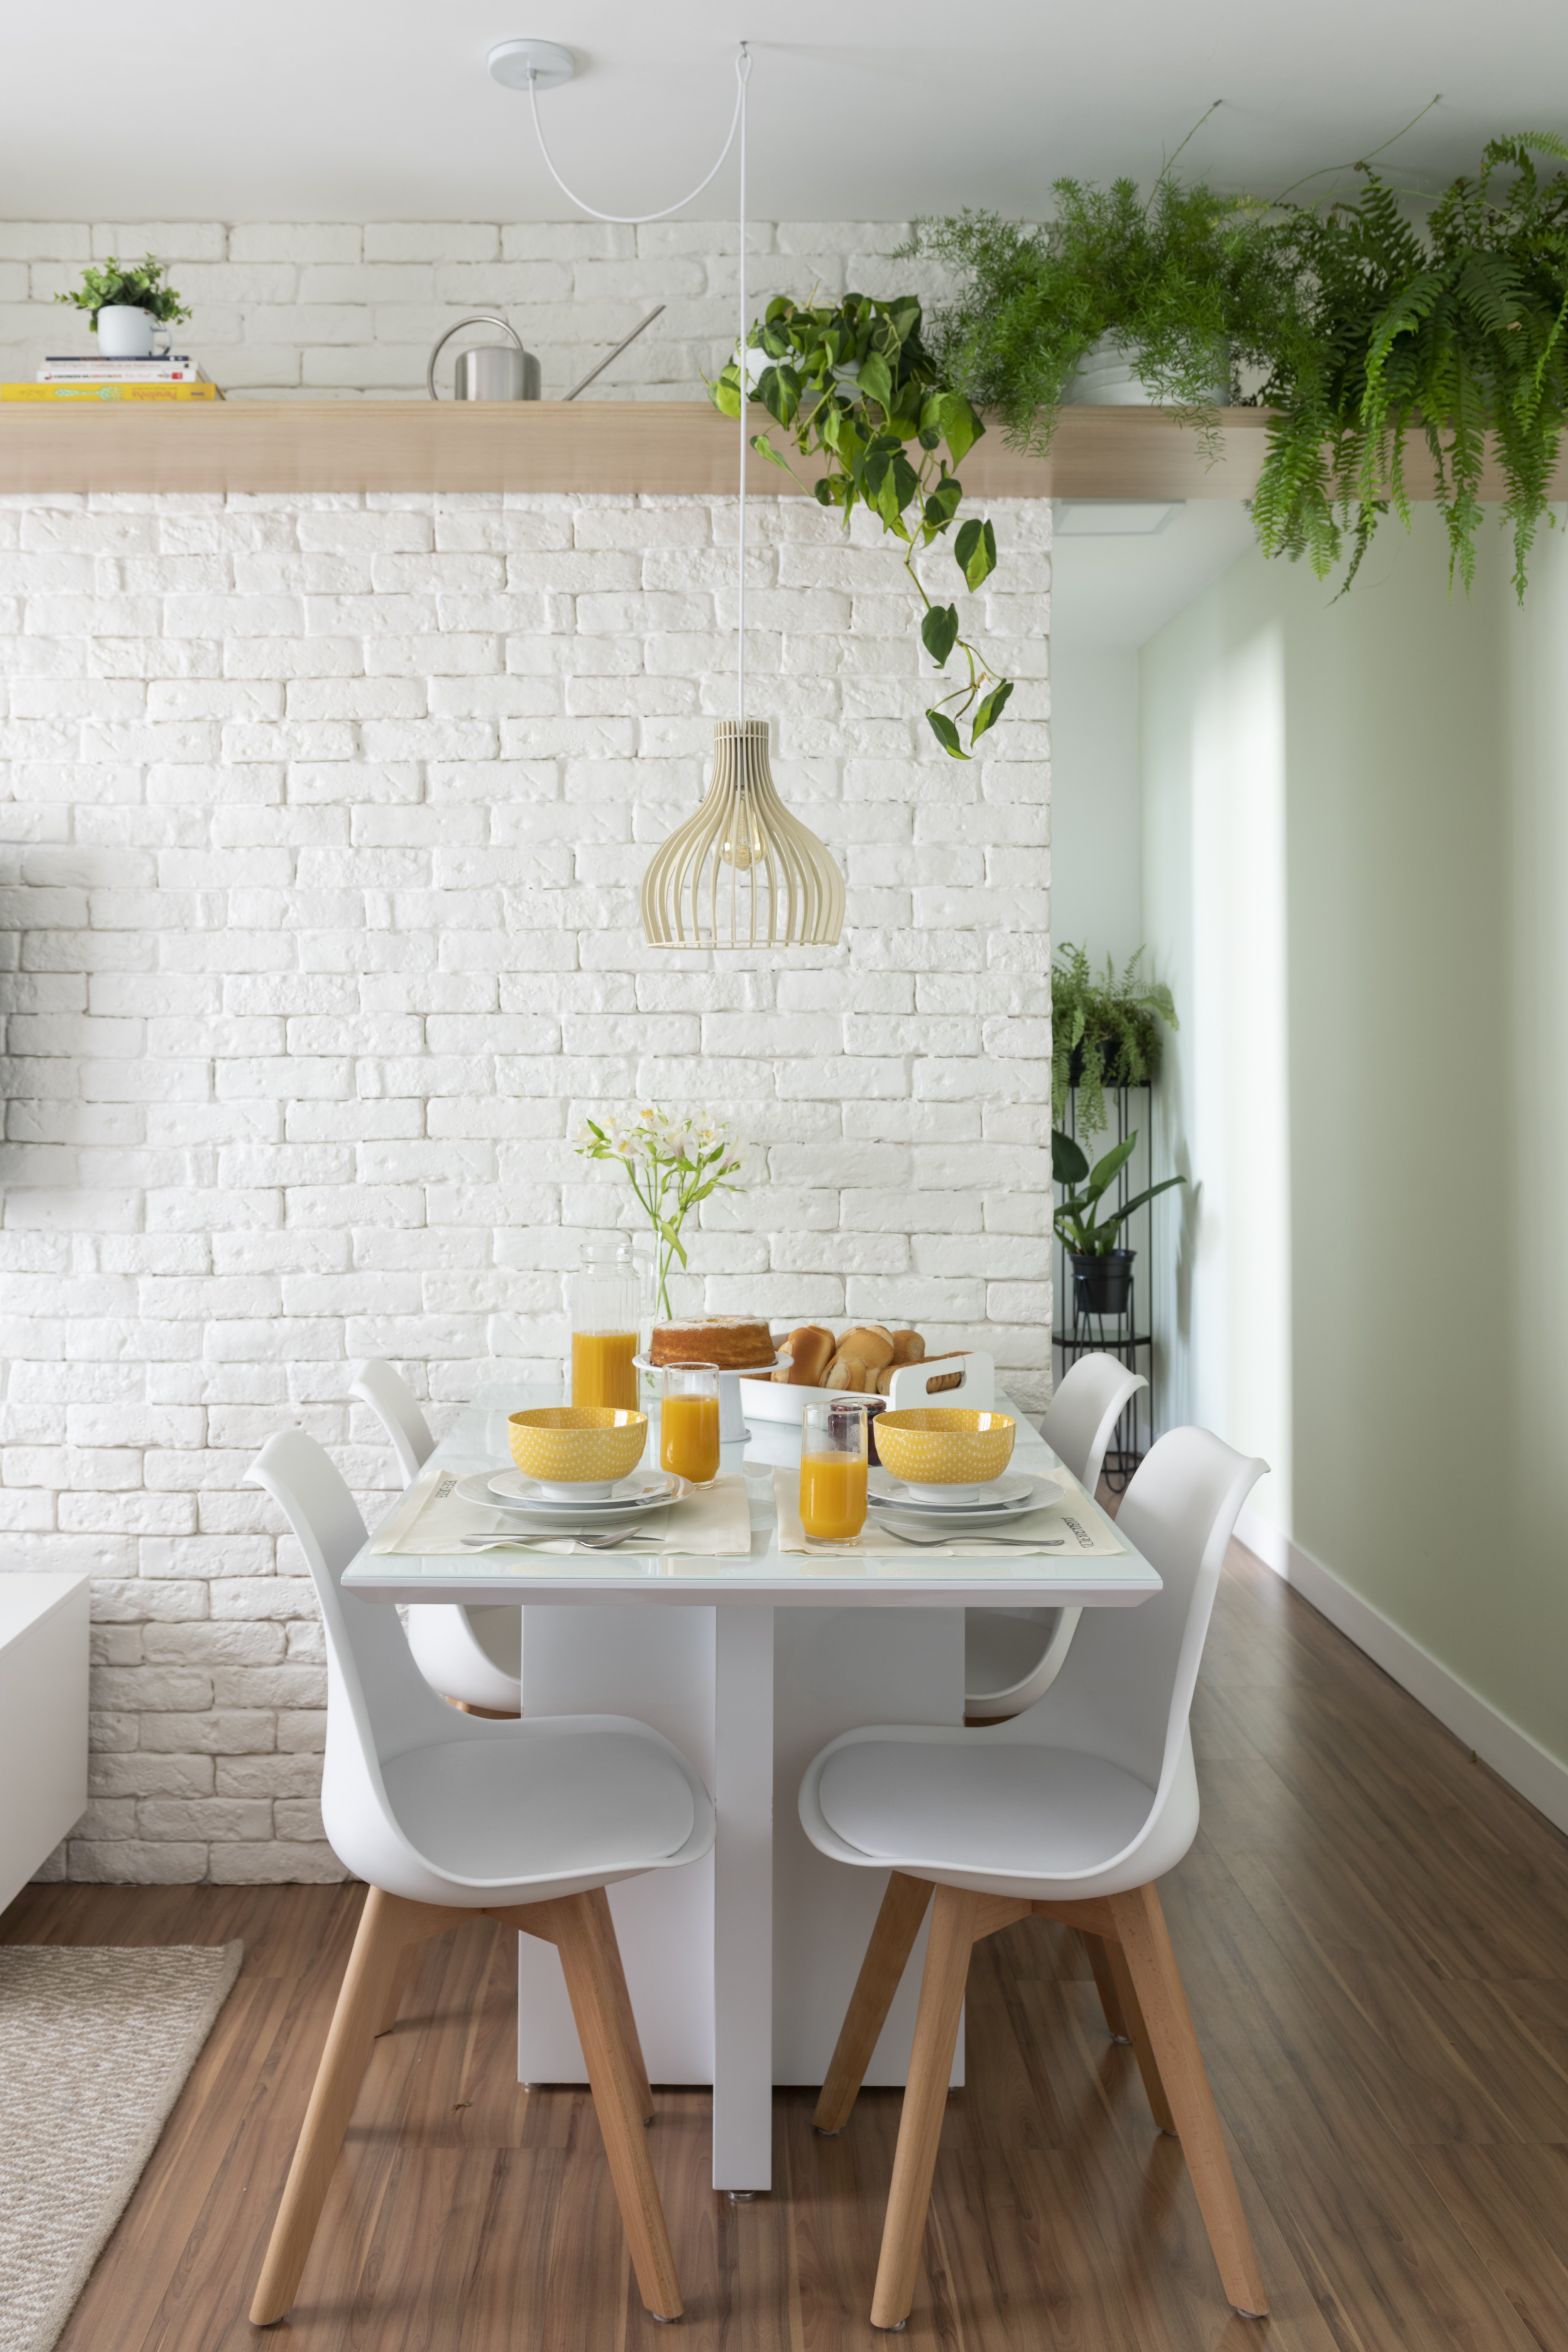 Décor do dia: sala de jantar com decoração minimalista e plantas - Casa  Vogue | Décor do dia